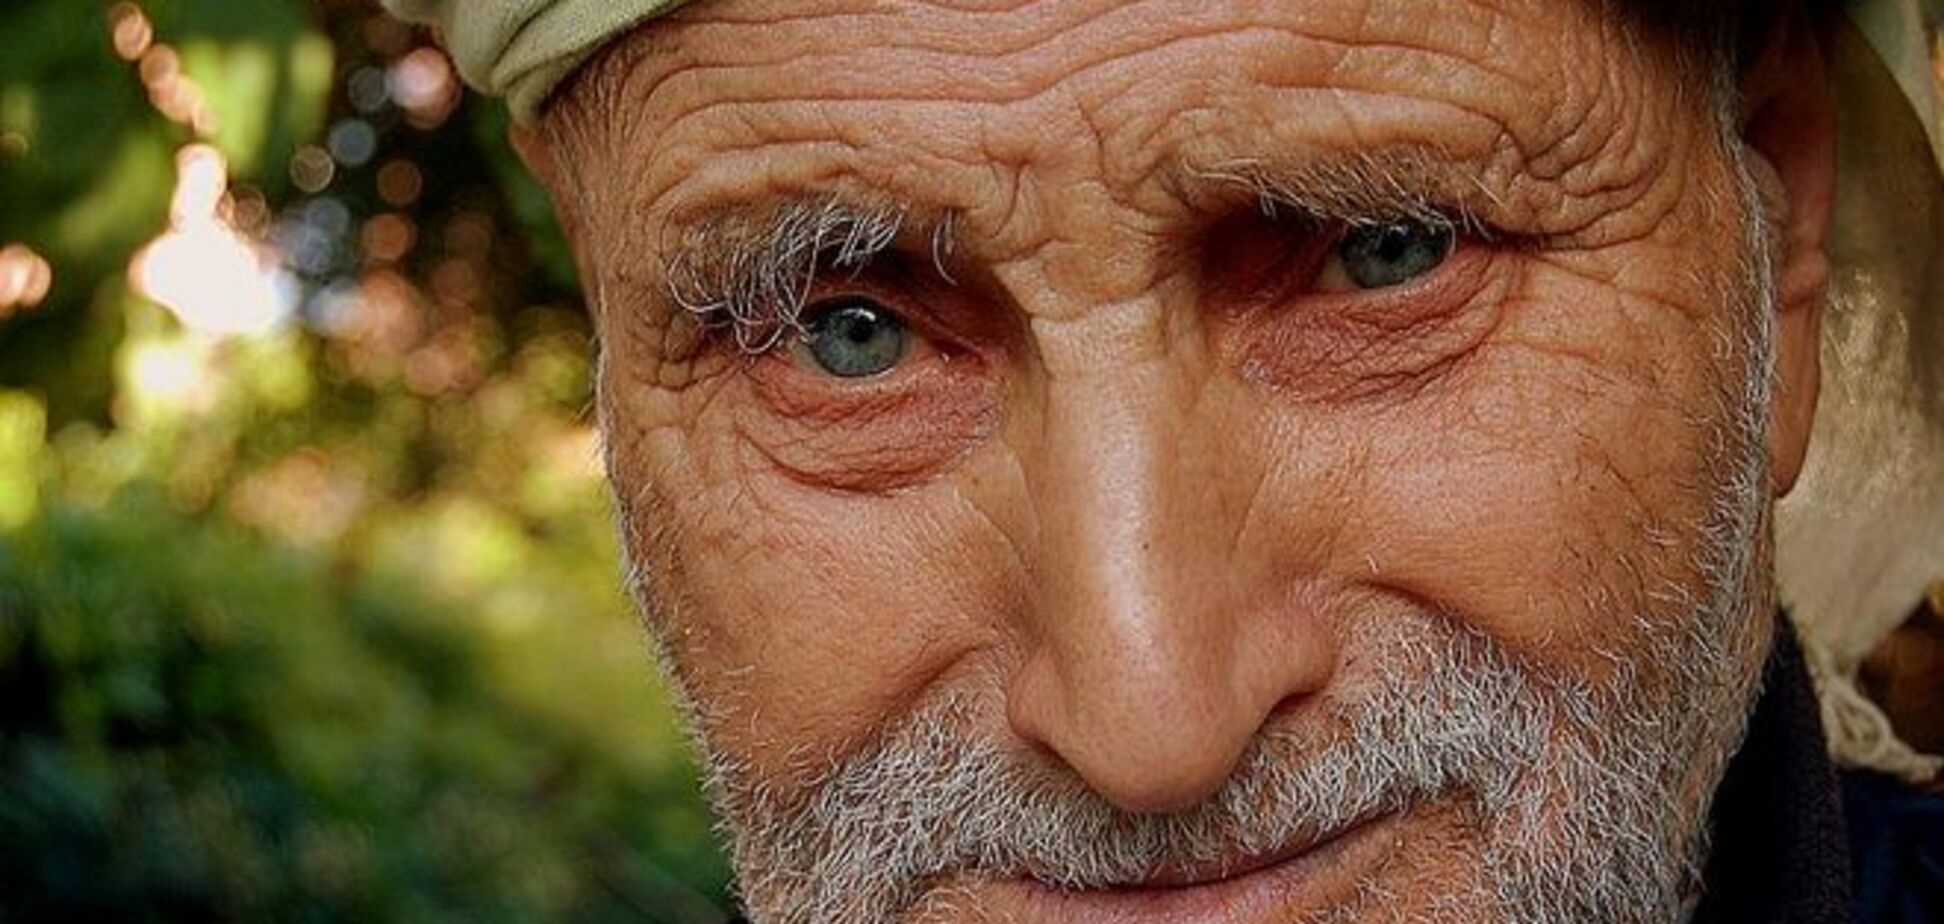 Дожить до 100 лет: секреты здоровья долгожителей Абхазии и долины Хунза